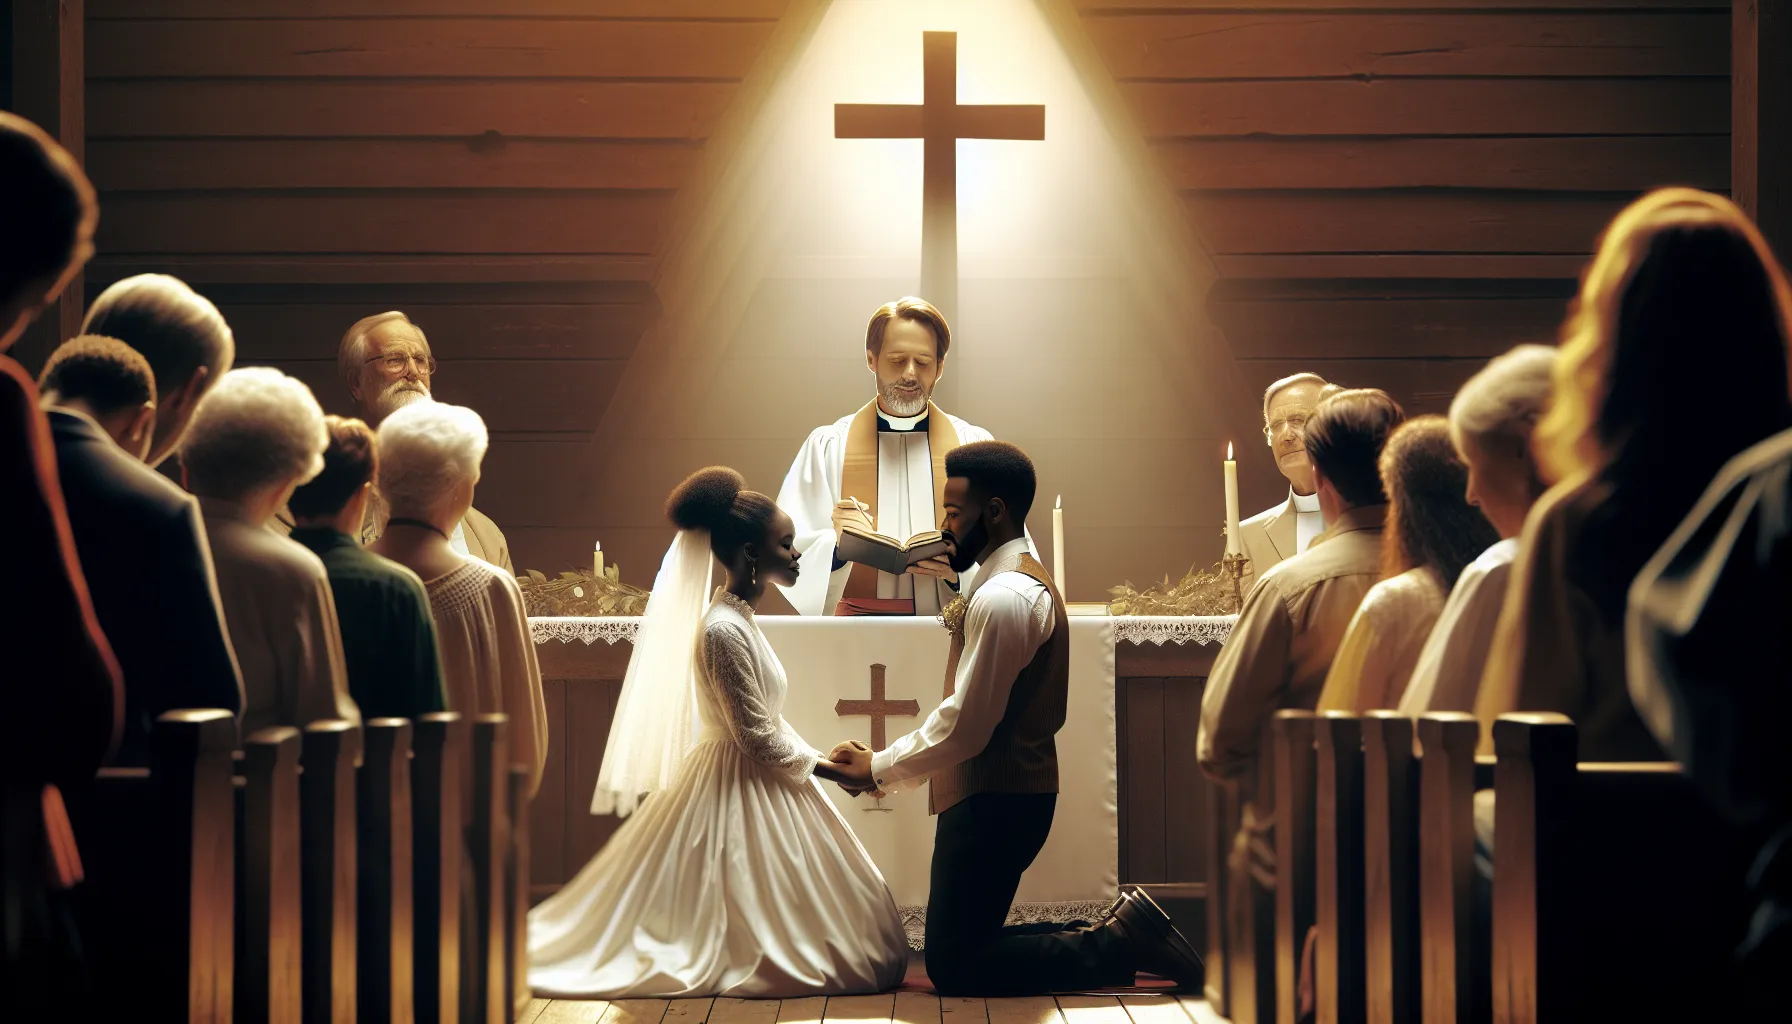 El matrimonio como un sacramento sagrado en la fe cristiana: su propósito divino revelado.